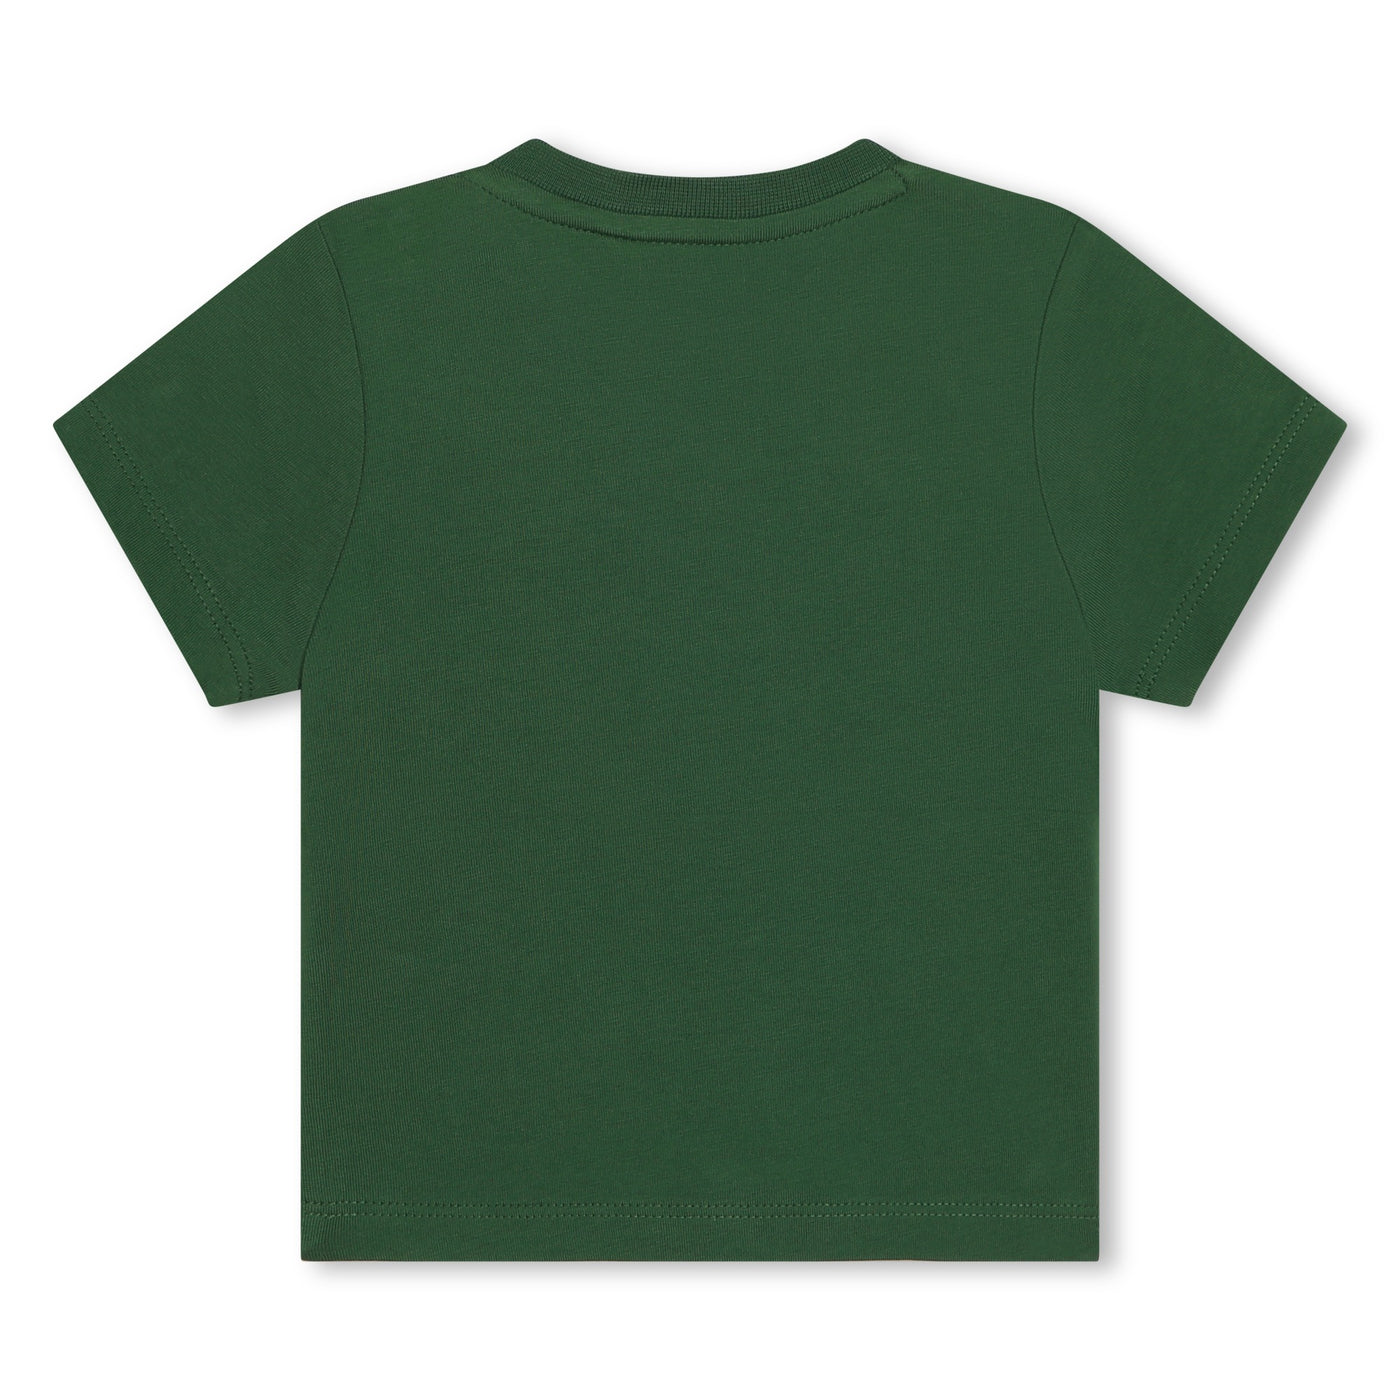 Toddler Khaki T-shirt by BOSS